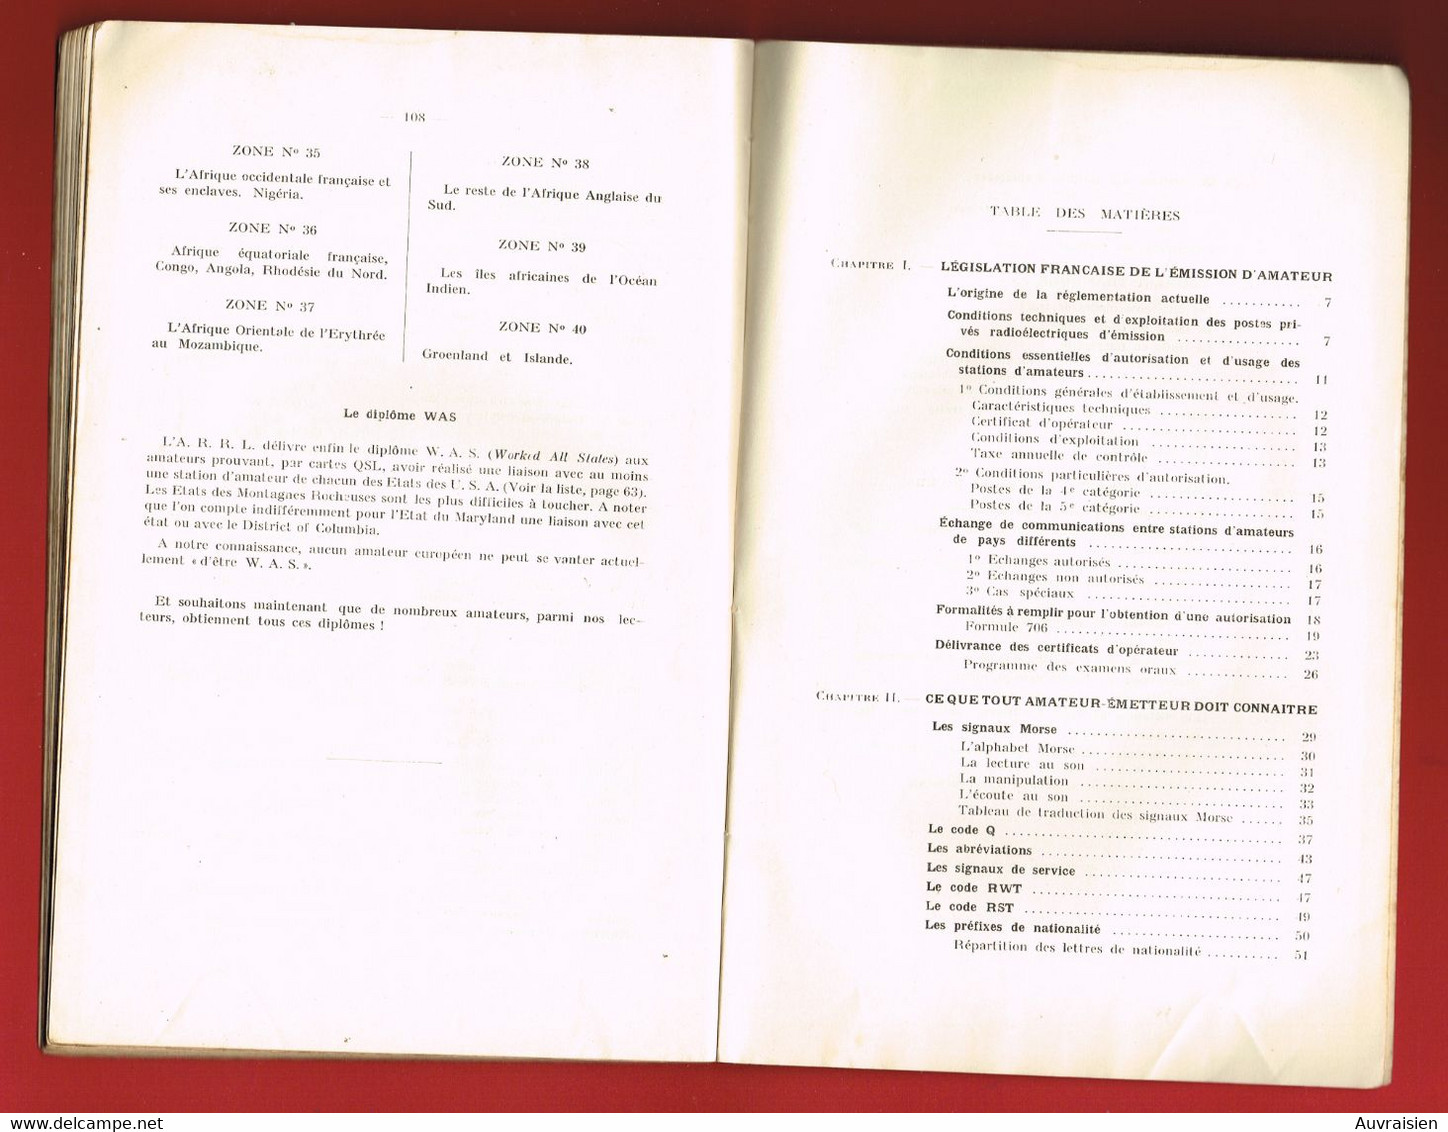 1 Plaquette  TSF Le Trafic D'Amateur Sur  Ondes Courtes Librairie De La Radio 1938 Edouart CLIQUET - Literature & Schemes